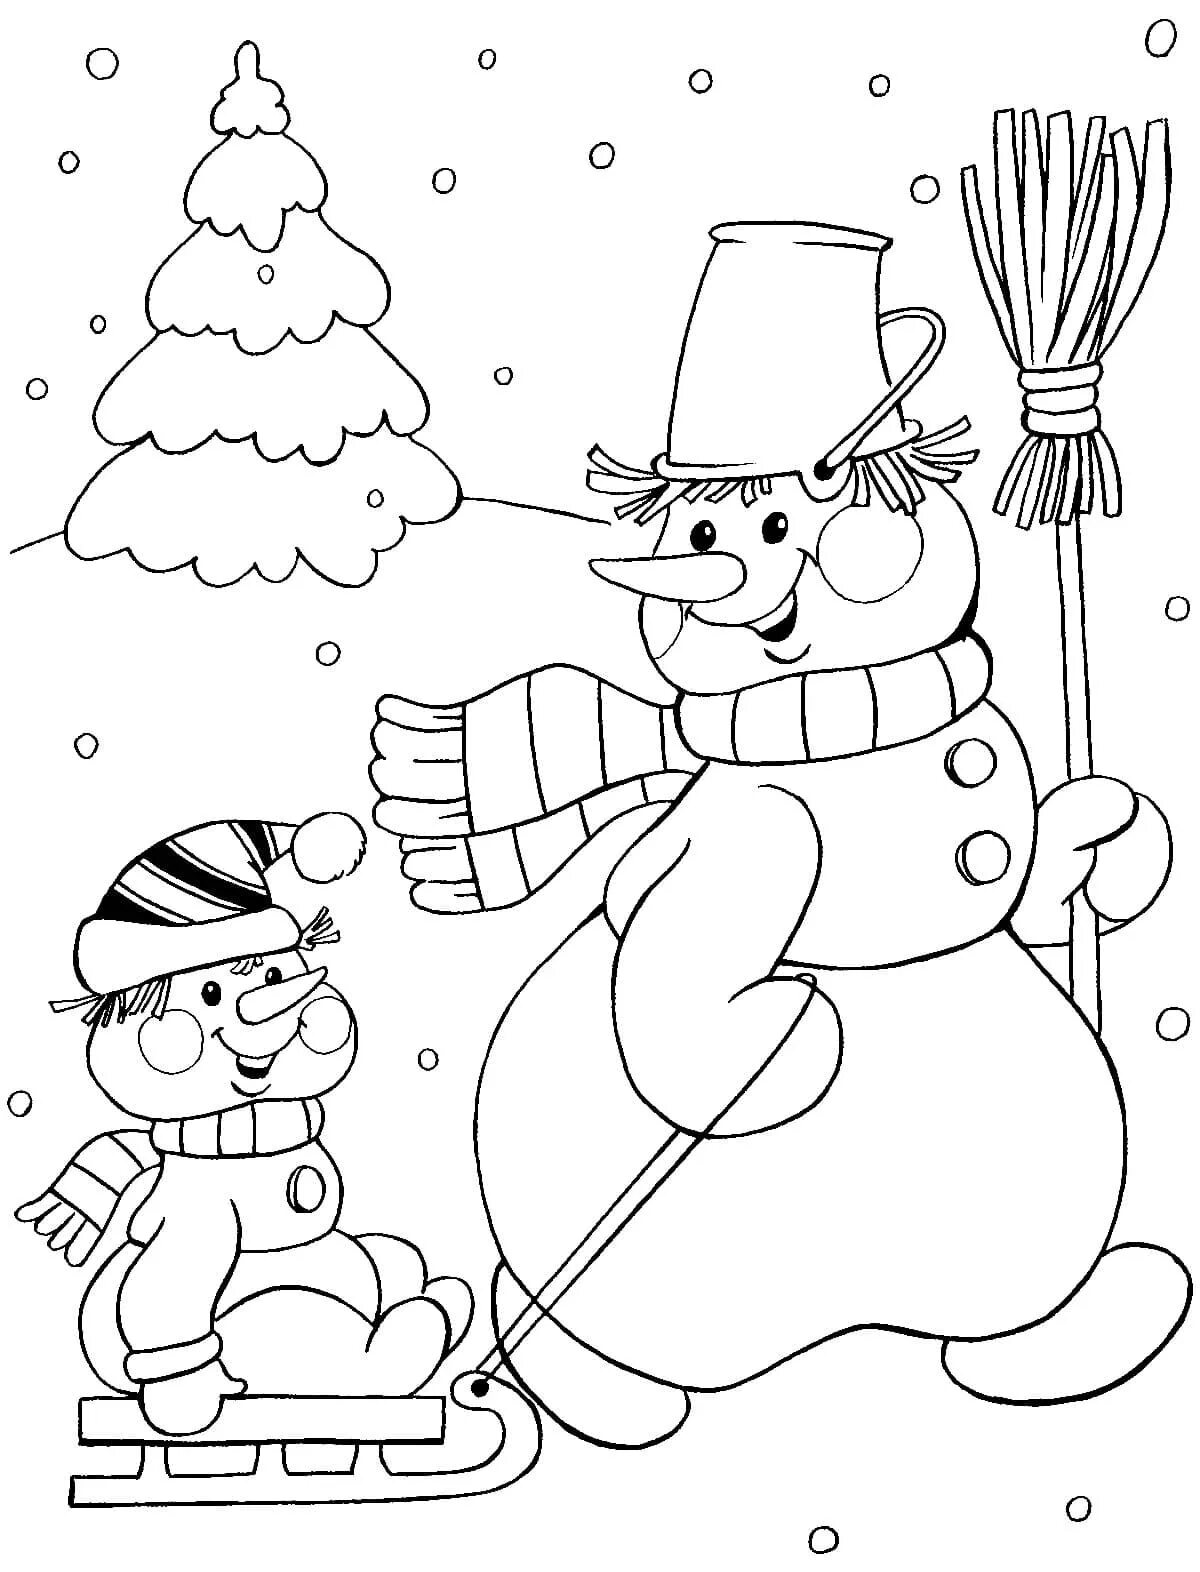 Художественная раскраска снеговик для детей 5 6